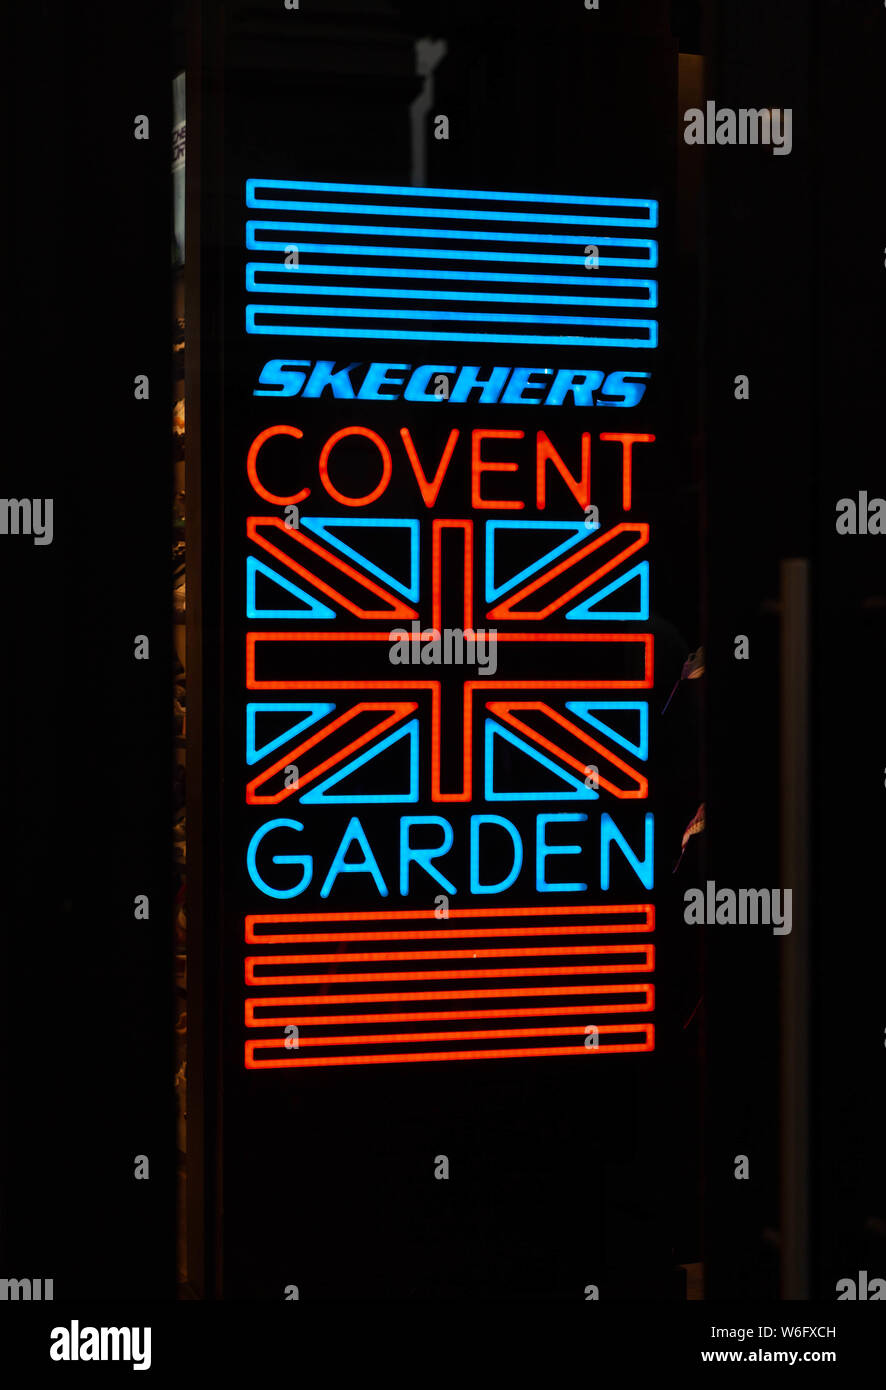 Skechers Covent Garden LED sign Stock Photo